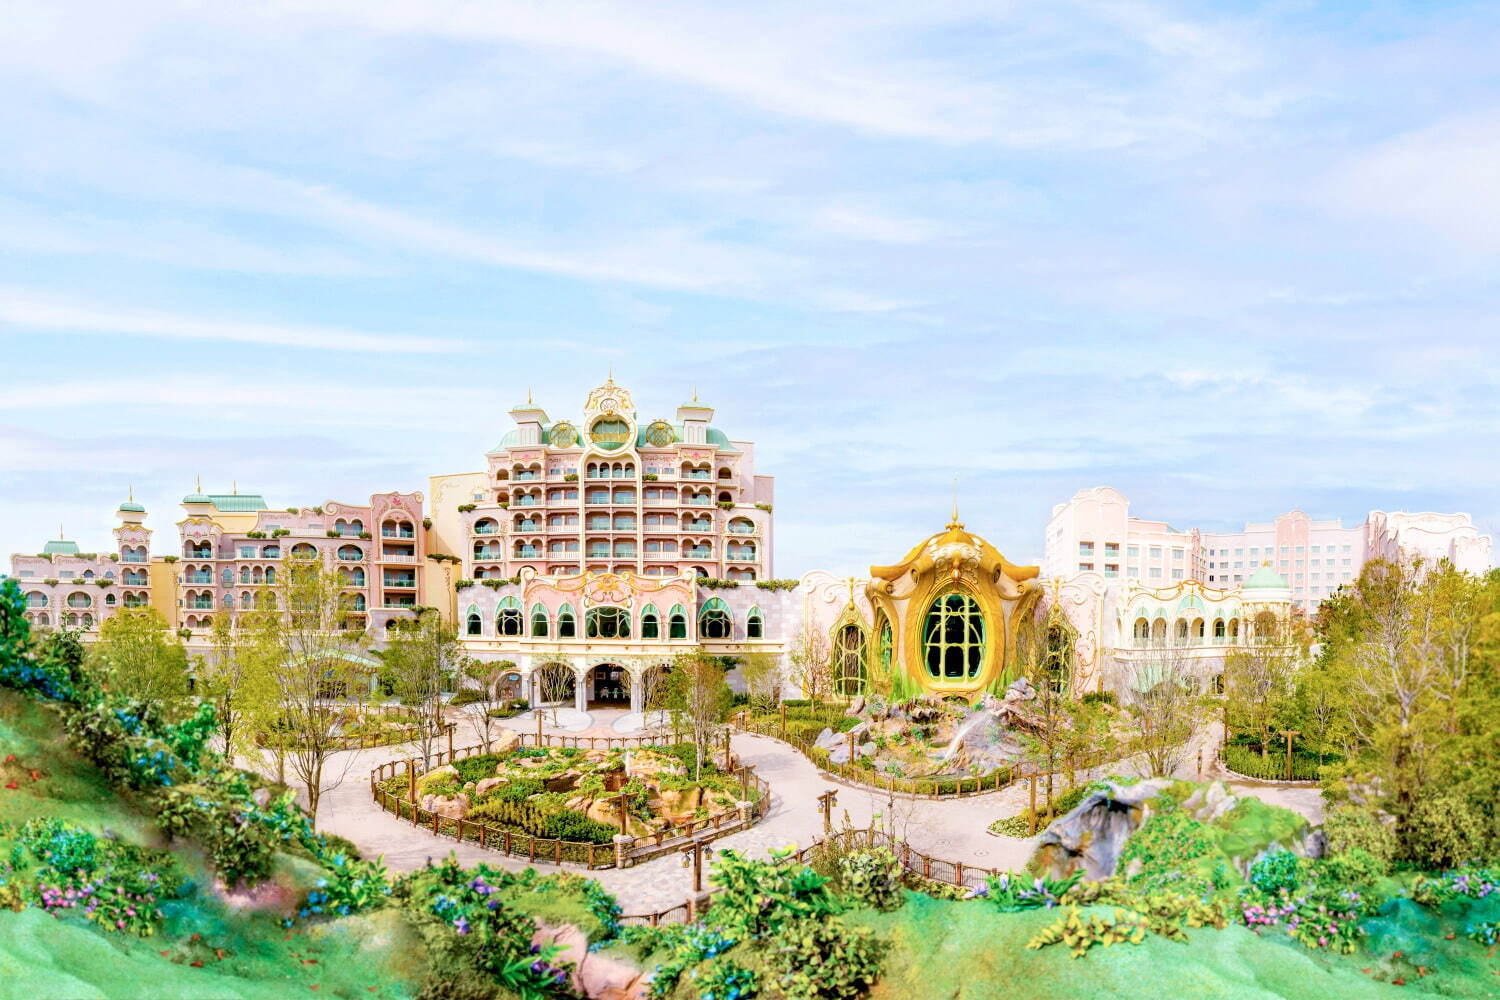 東京迪士尼酒店2024丨
東京迪士尼海洋夢幻泉鄉大飯店（Tokyo Disneysea Fantasy Springs Hotel）